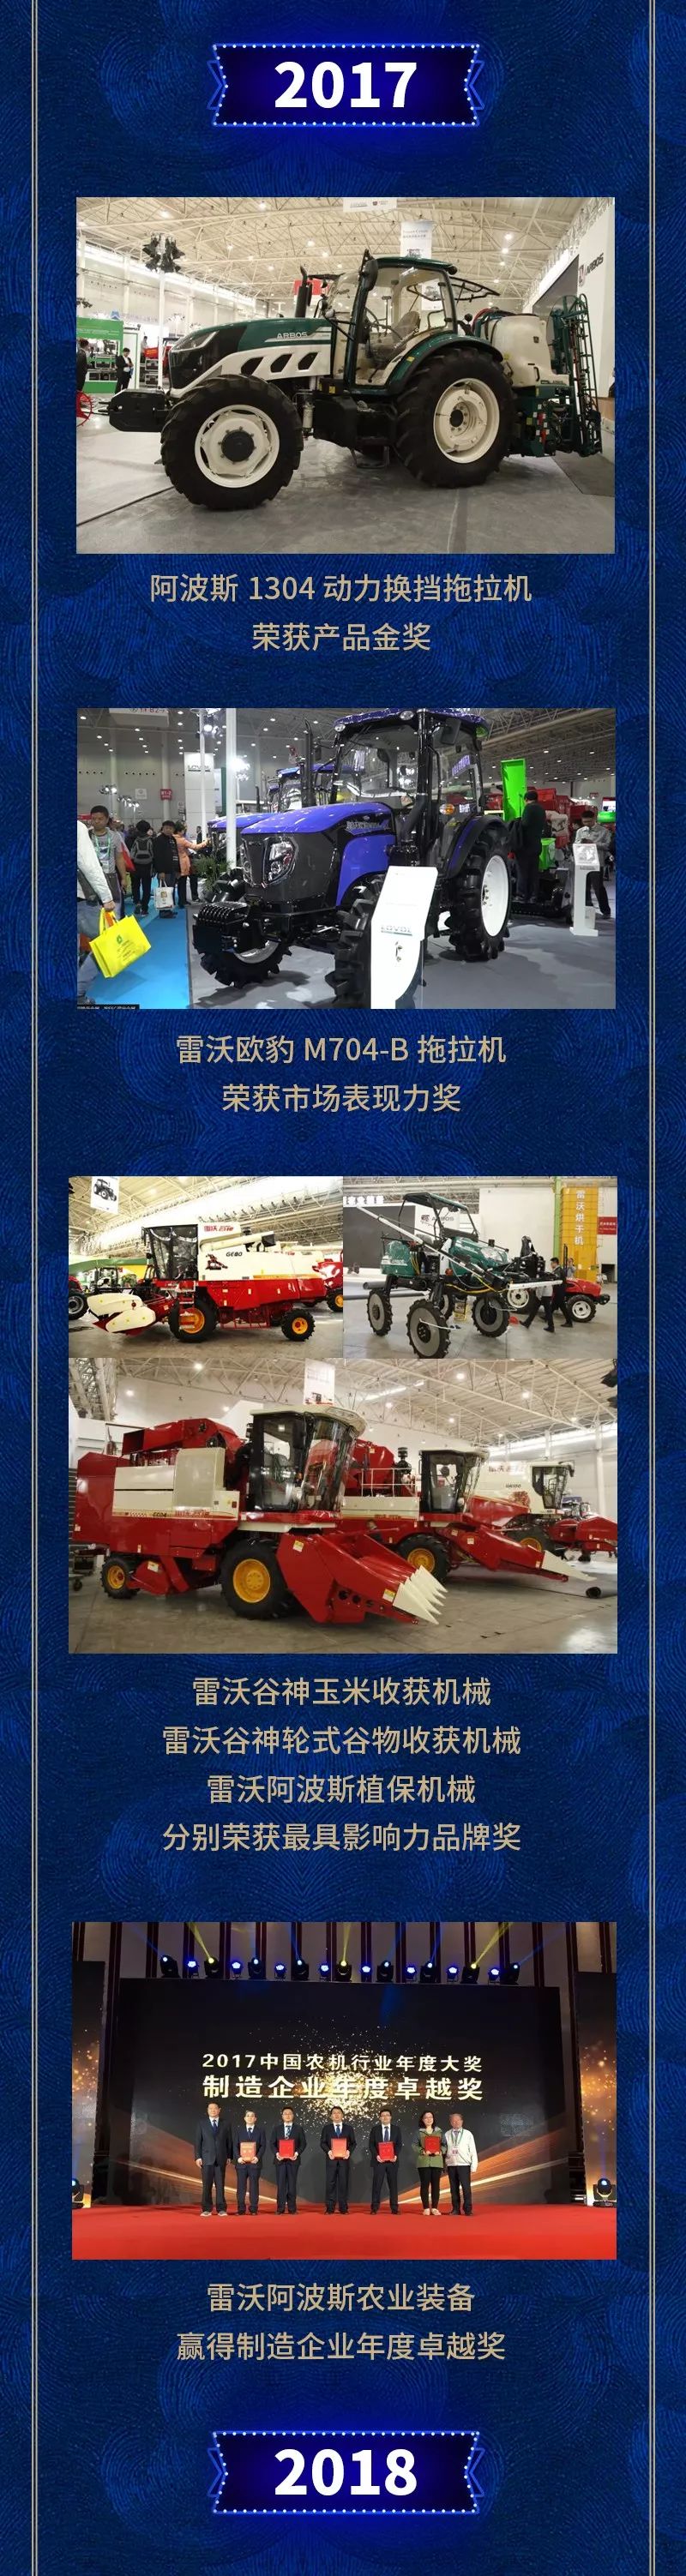 雷沃阿波斯星事件,为国际农业机械展览会增亮添彩